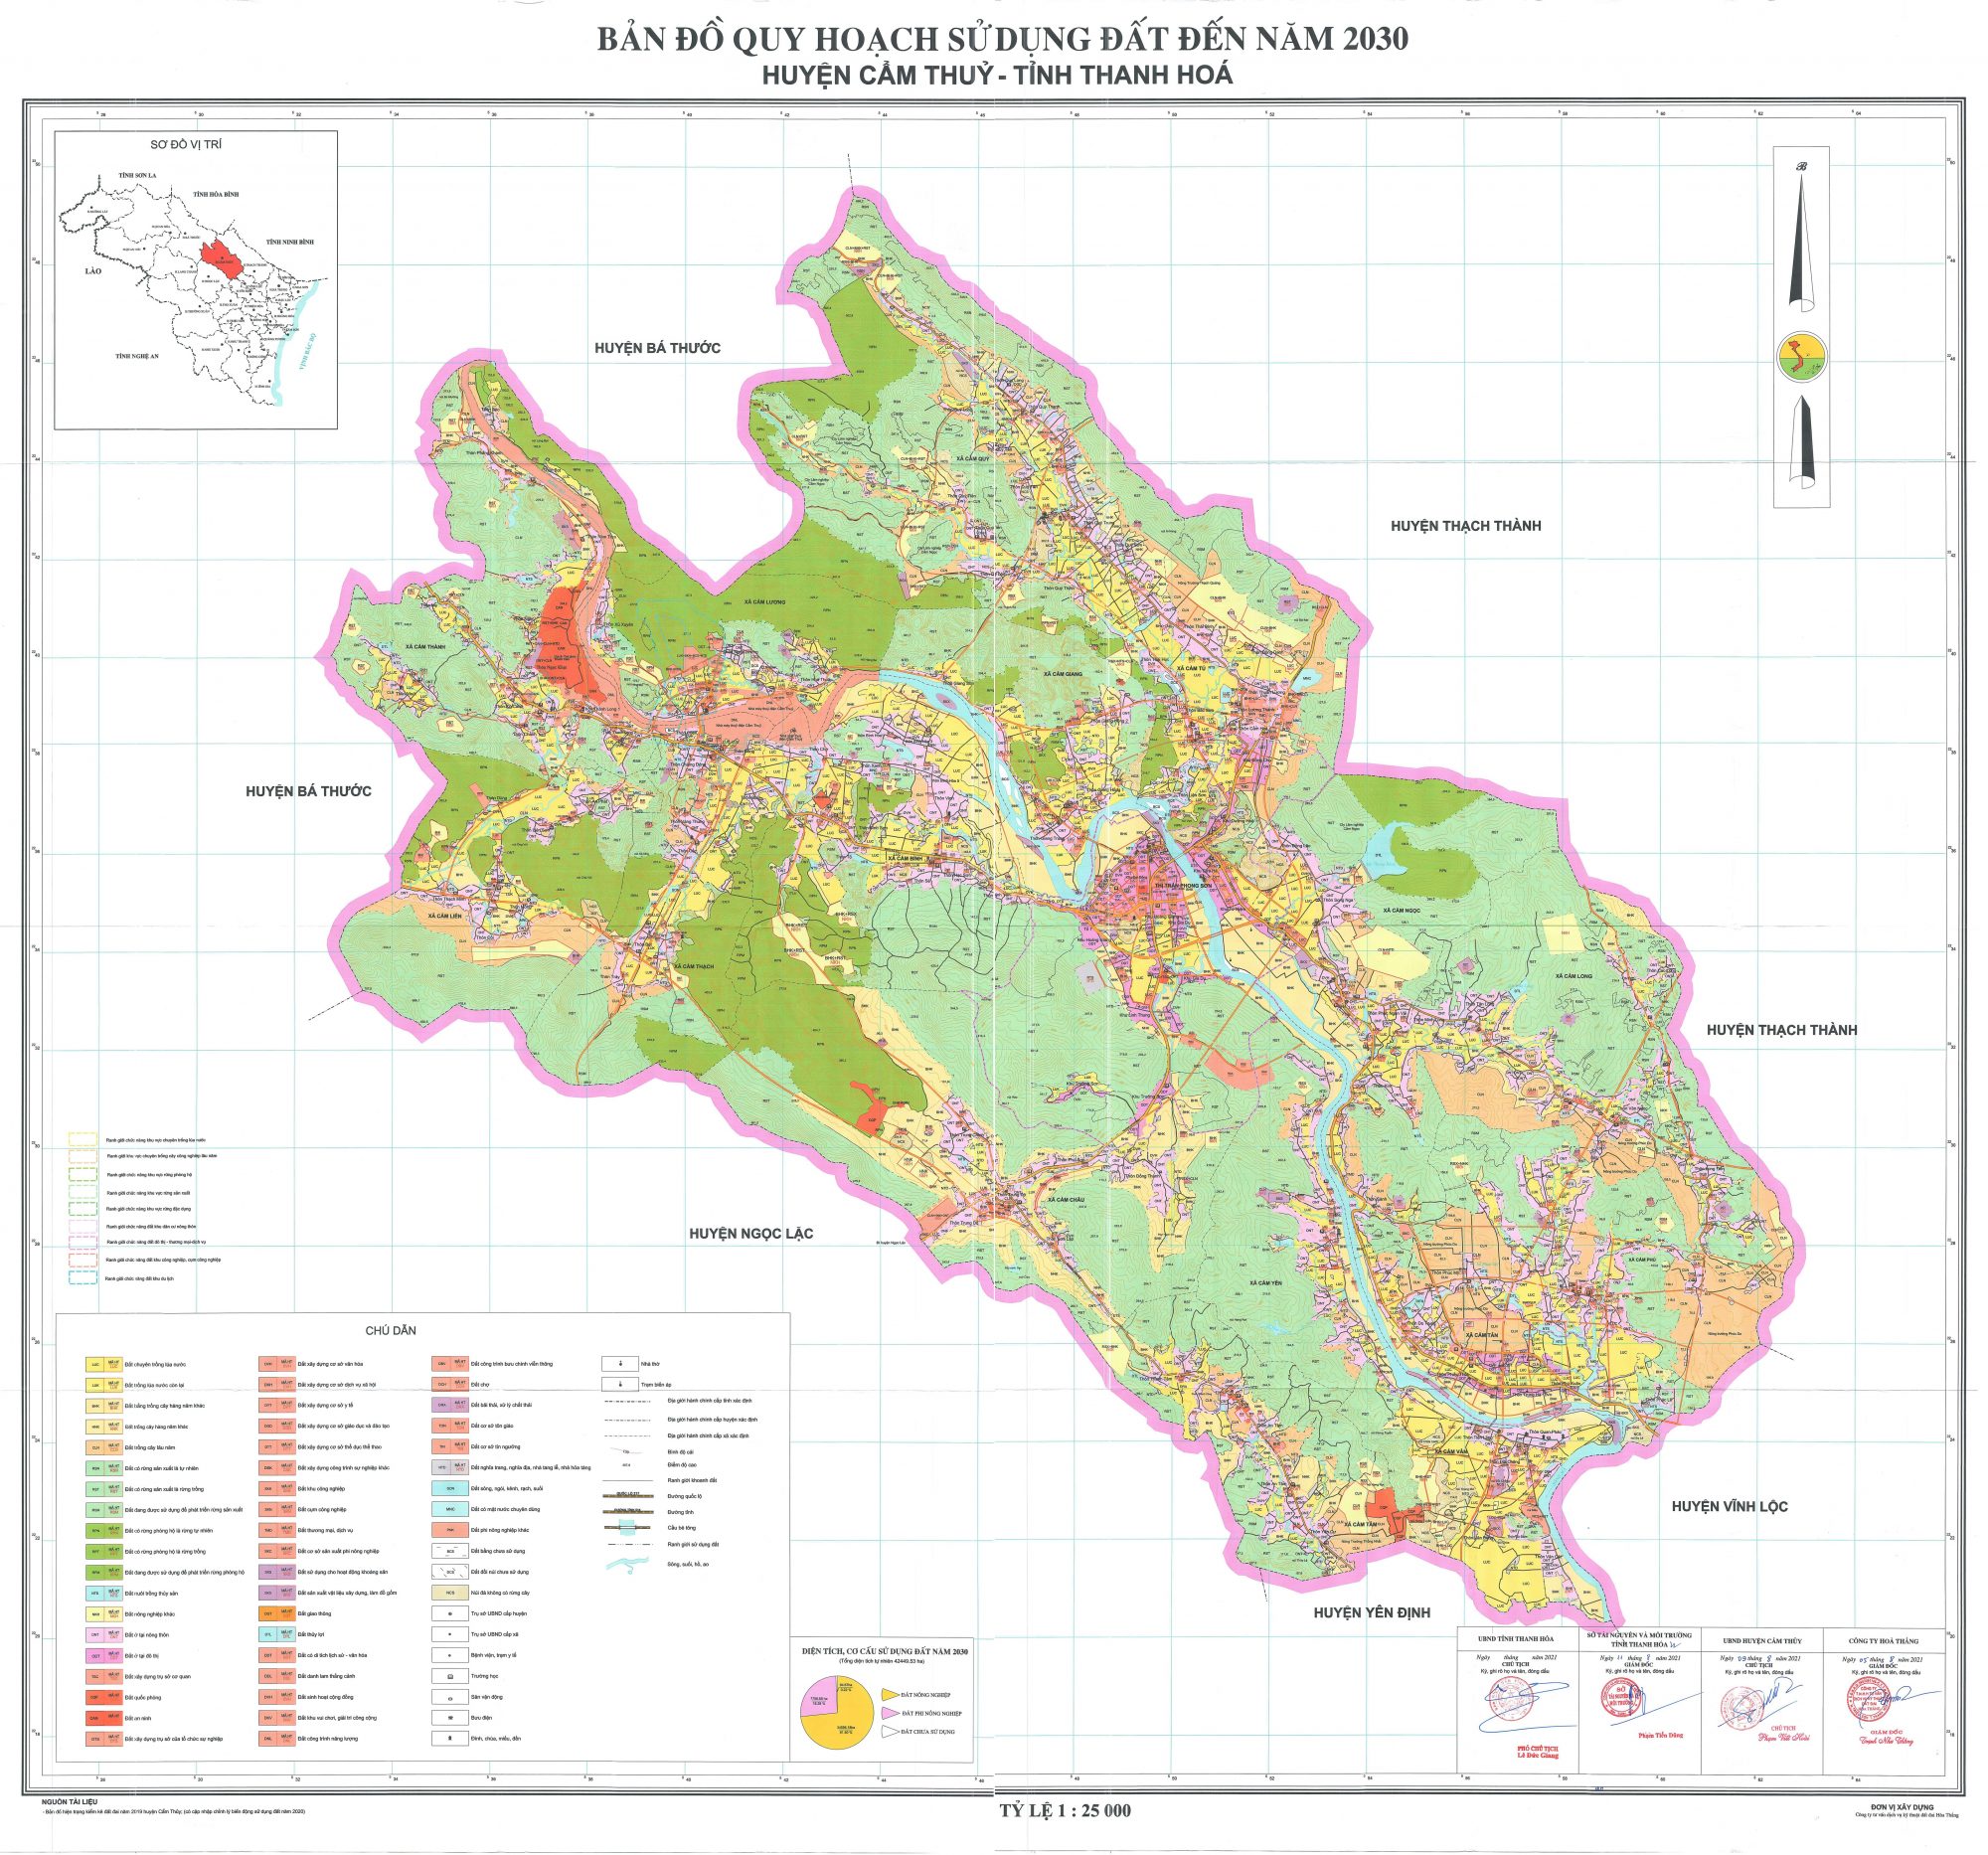 Bản đồ quy hoạch huyện Cẩm Thủy, tỉnh Thanh Hóa đến năm 2030